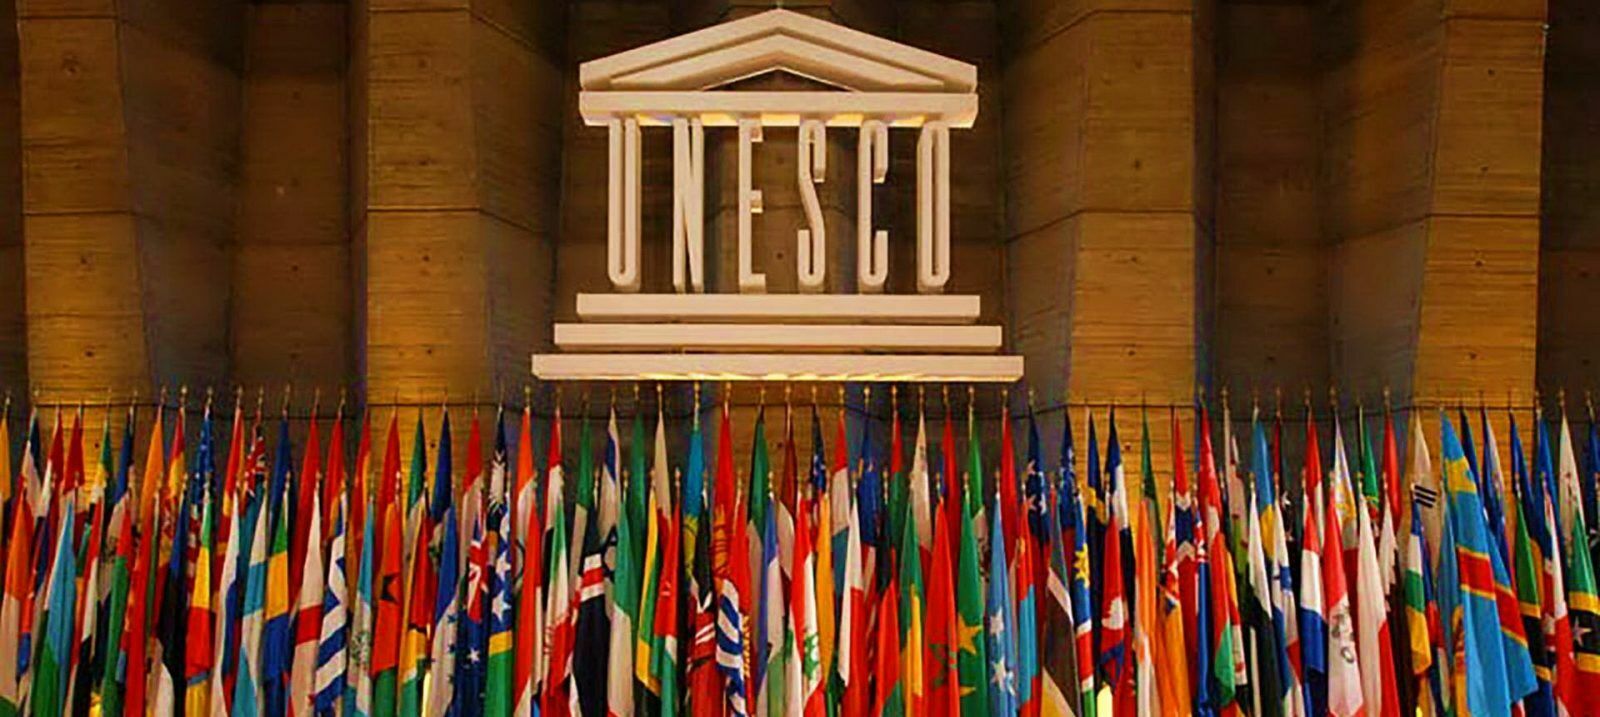 Франция отказалась выдать визы россиянам для участия в мероприятии ЮНЕСКО